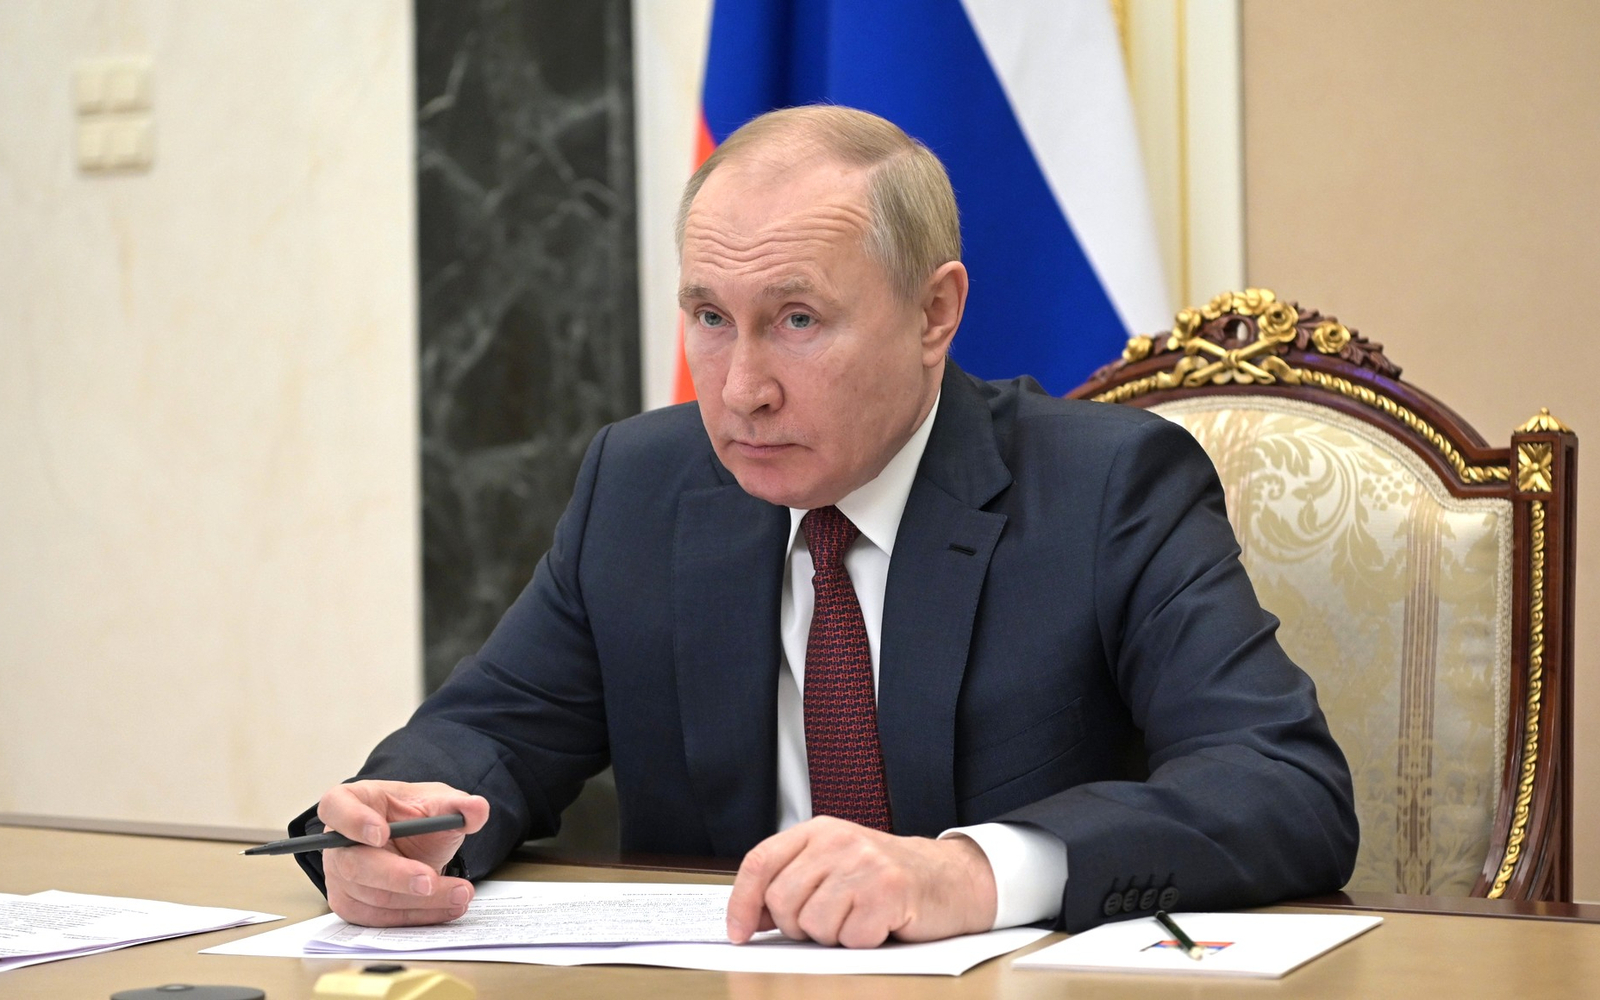 Посол ЮАР в Москве рассказал о высокой популярности Путина в его стране